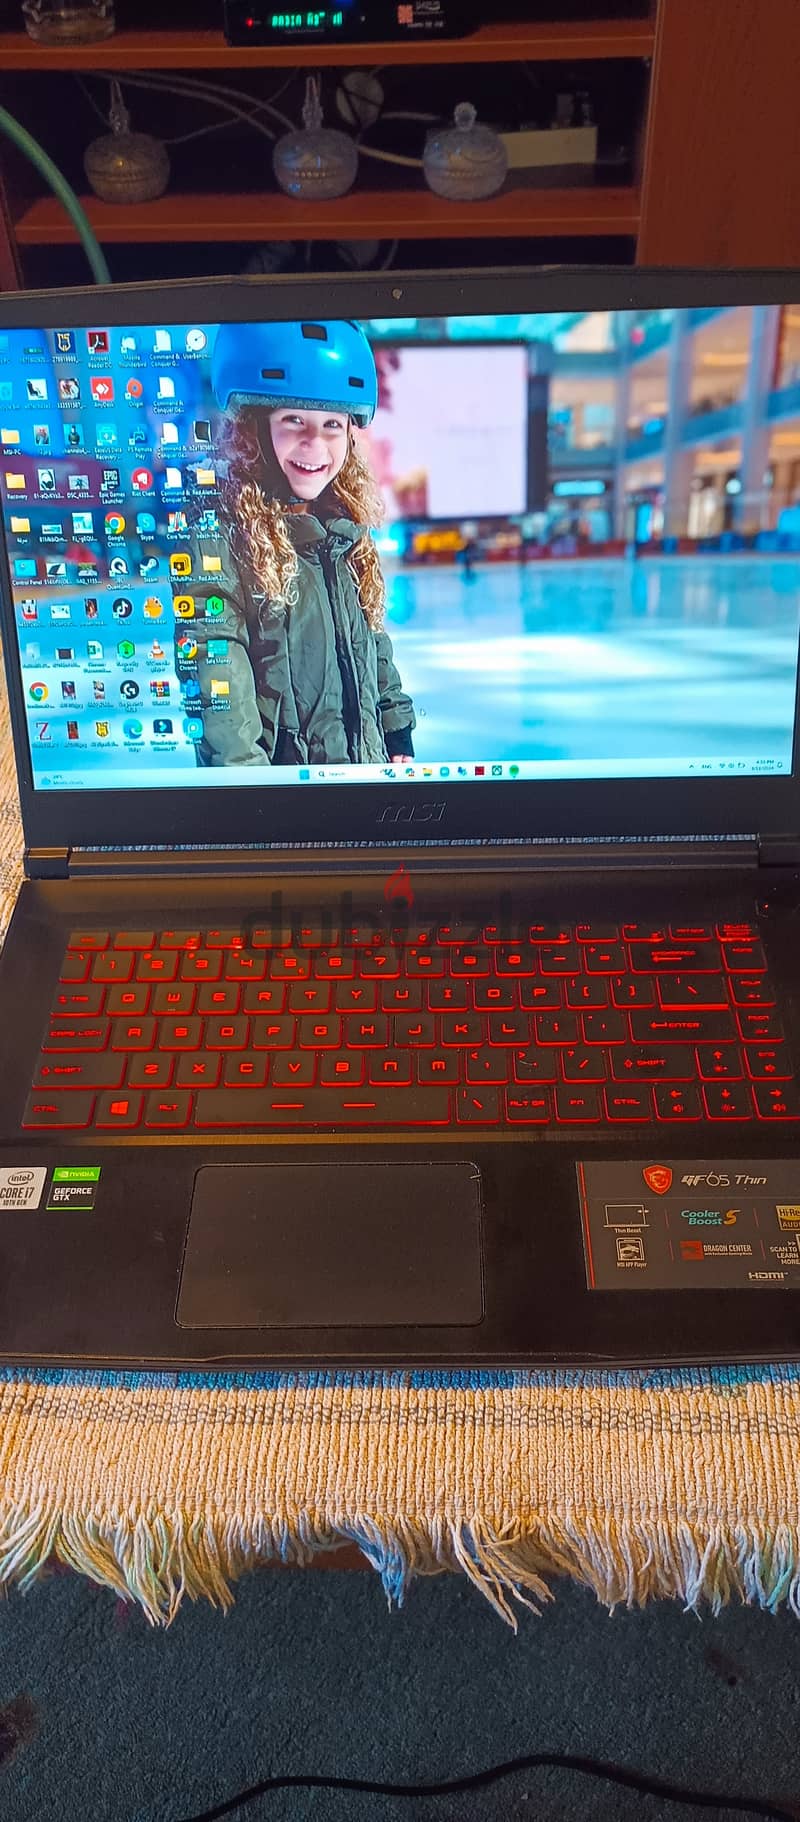 MSI Gaming laptop 0